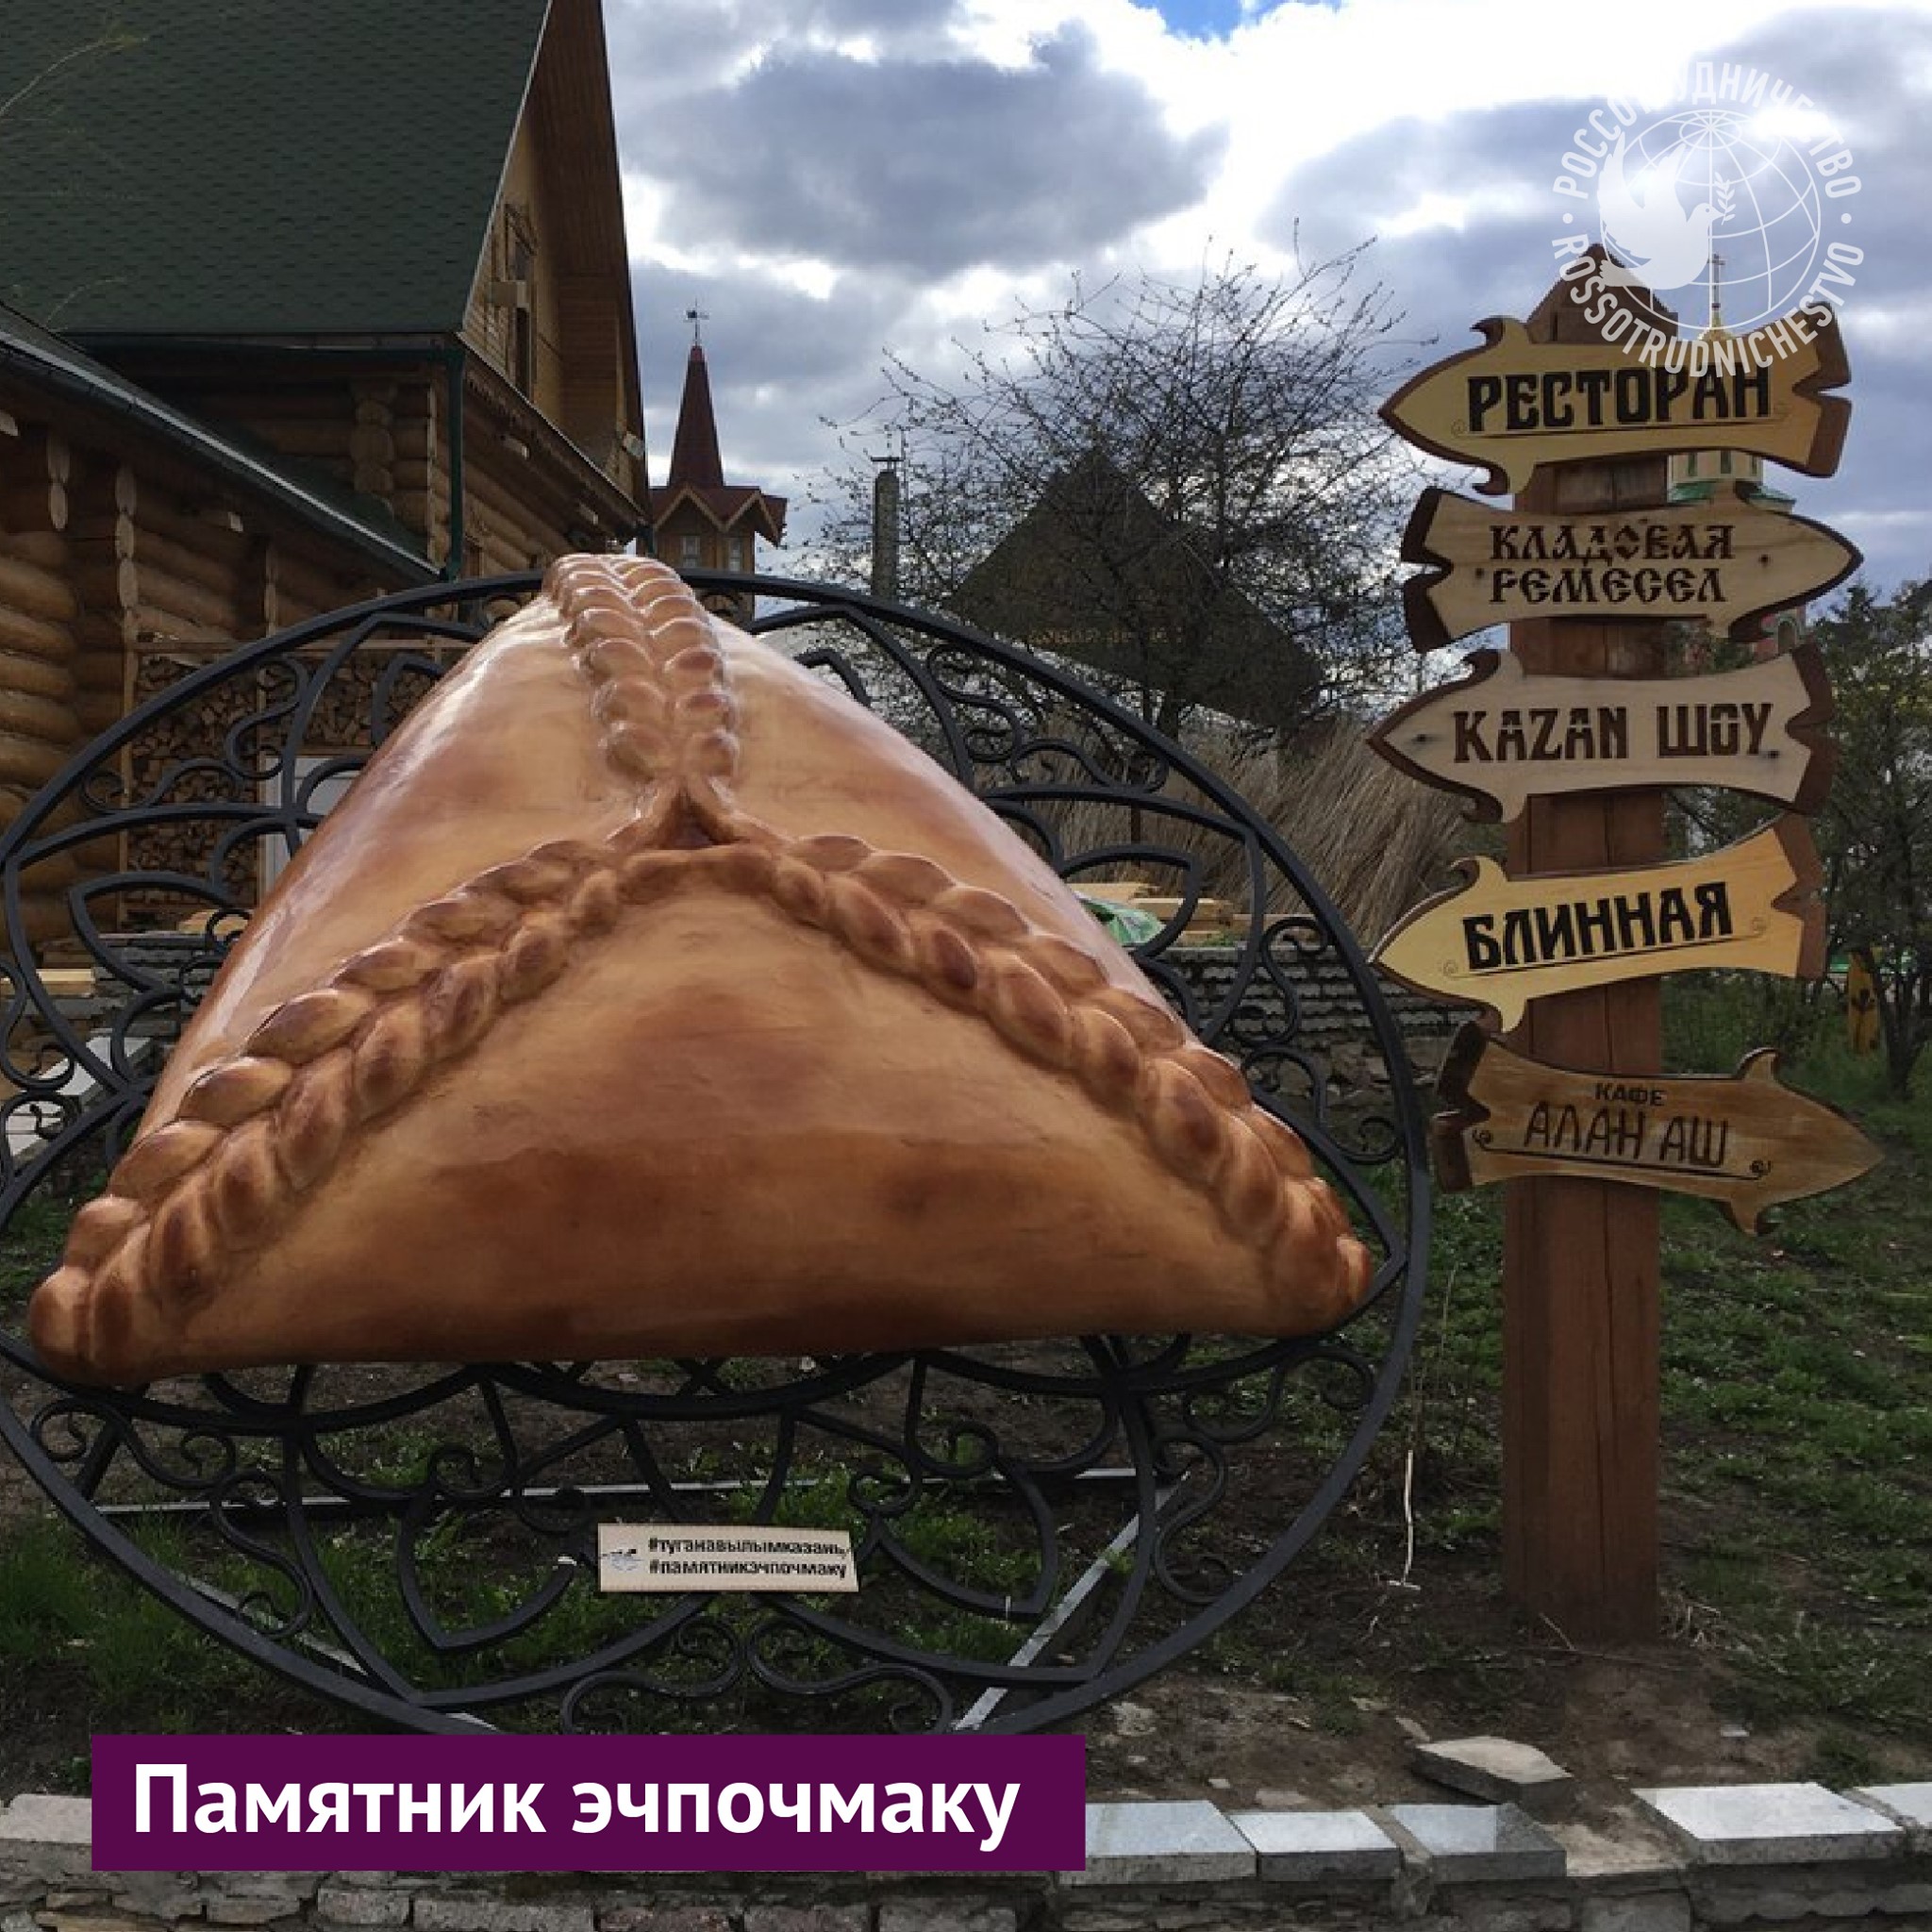 Если вы планируете поездку в Татарстан, предупреждаем сразу:...